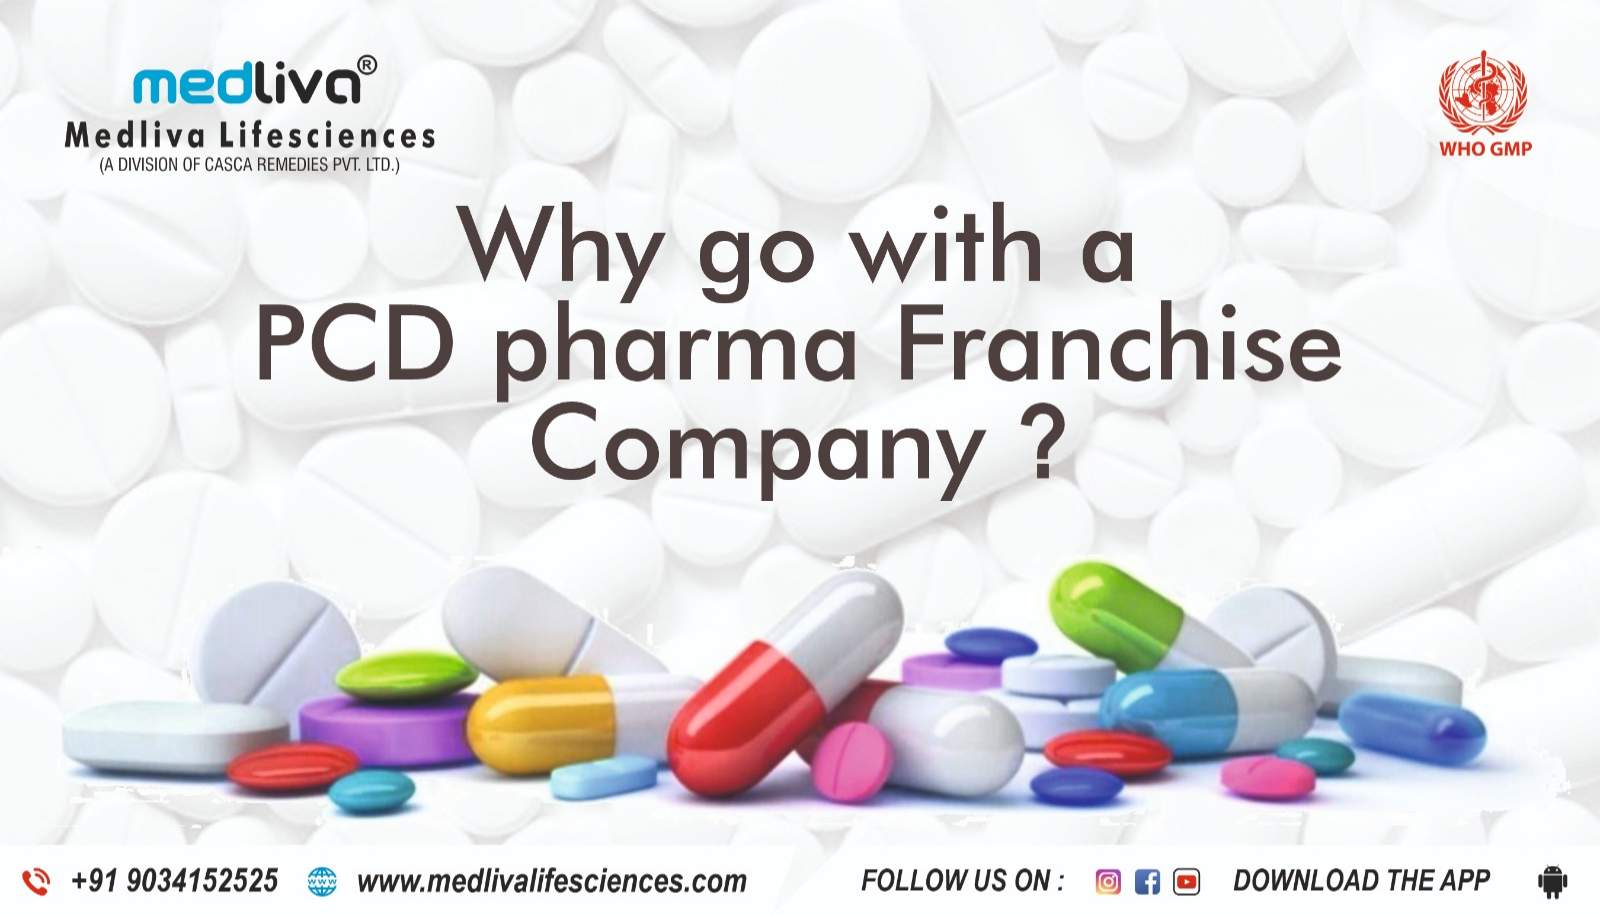 Pcd pharma franchisecompany - Haryana - Gurgaon ID1539512 2